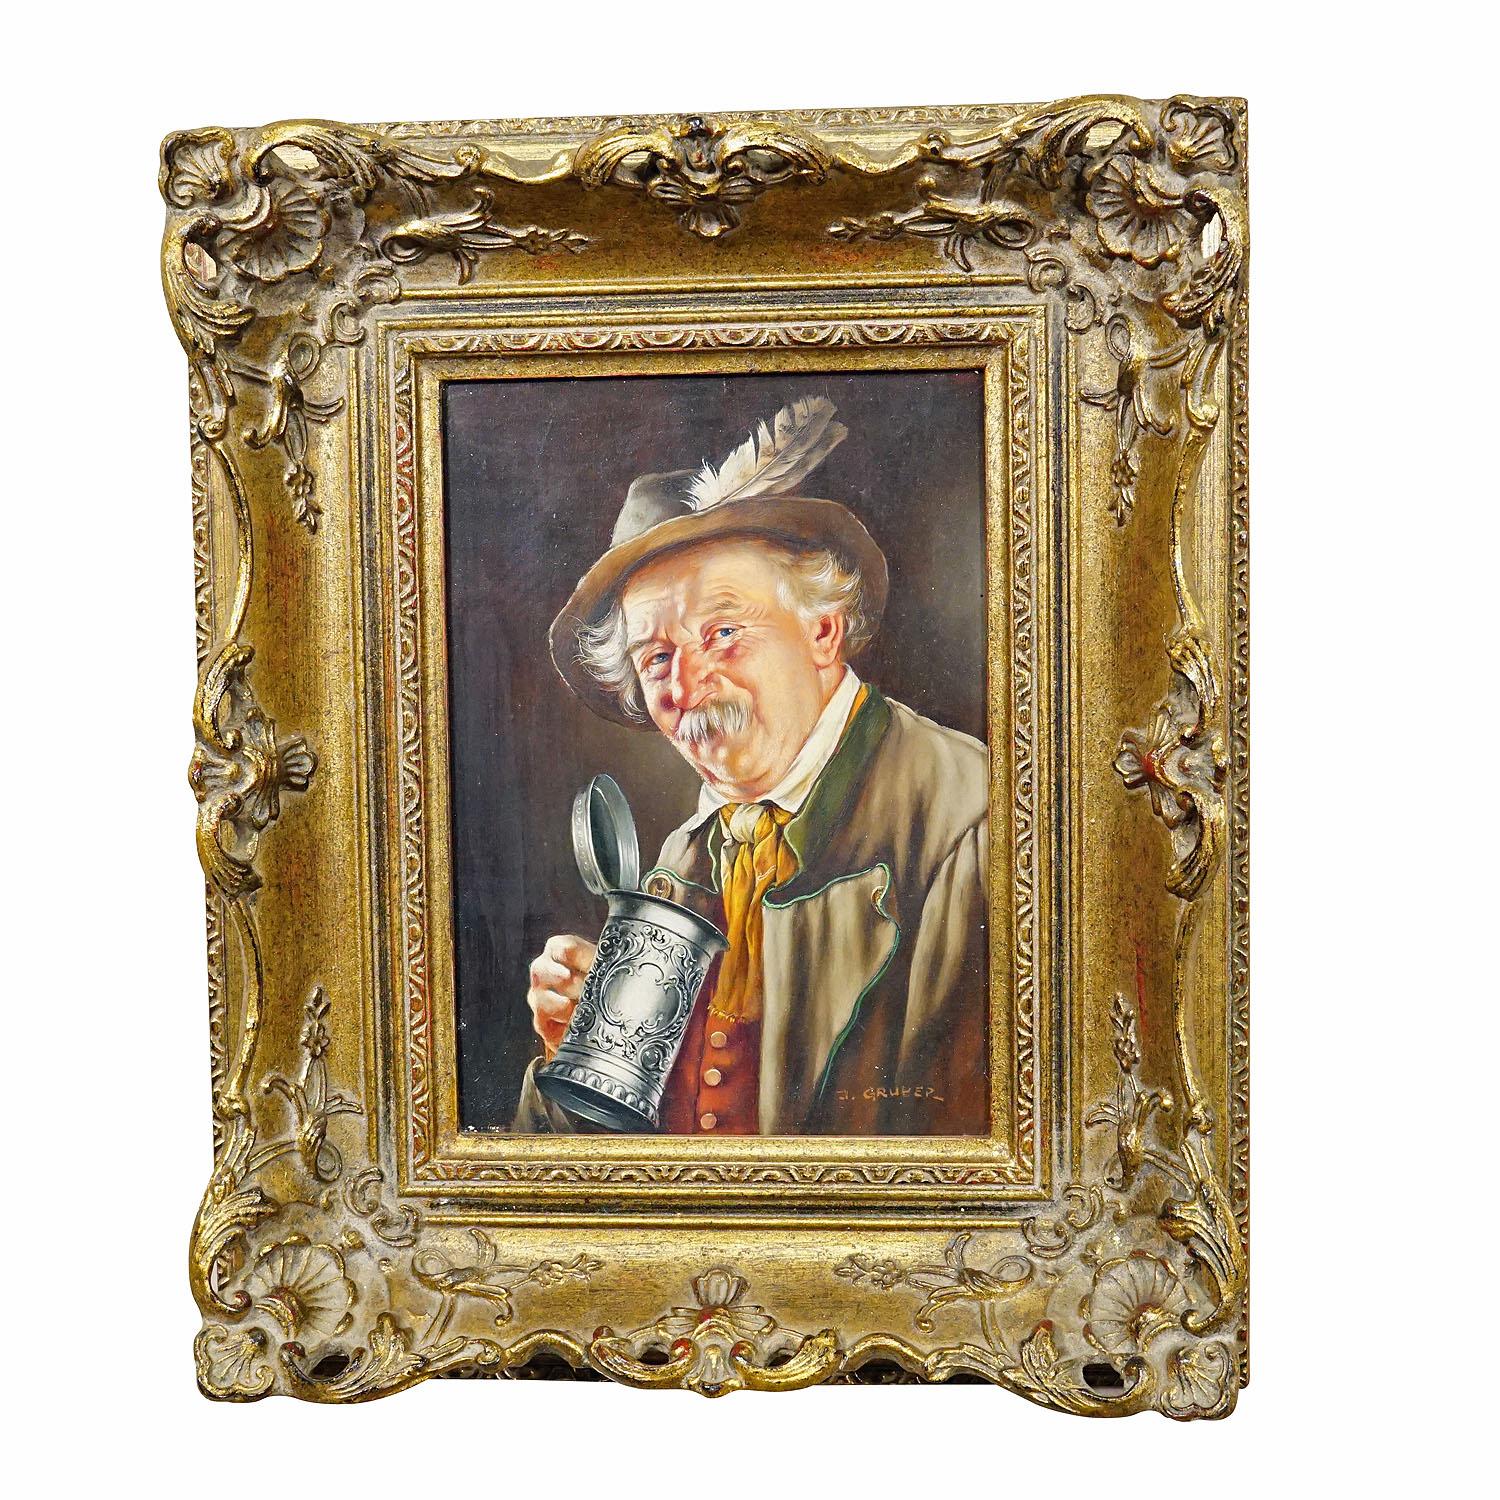 J. Gruber – Porträt eines bayerischen Volksmannes mit Bierbecher, Öl auf Holz

Ein farbenfrohes Ölgemälde, das einen biertrinkenden, volkstümlichen bayerischen Mann in seinem Sonntagsgewand darstellt. Gemalt auf Holz mit Pastellfarben um 1950.